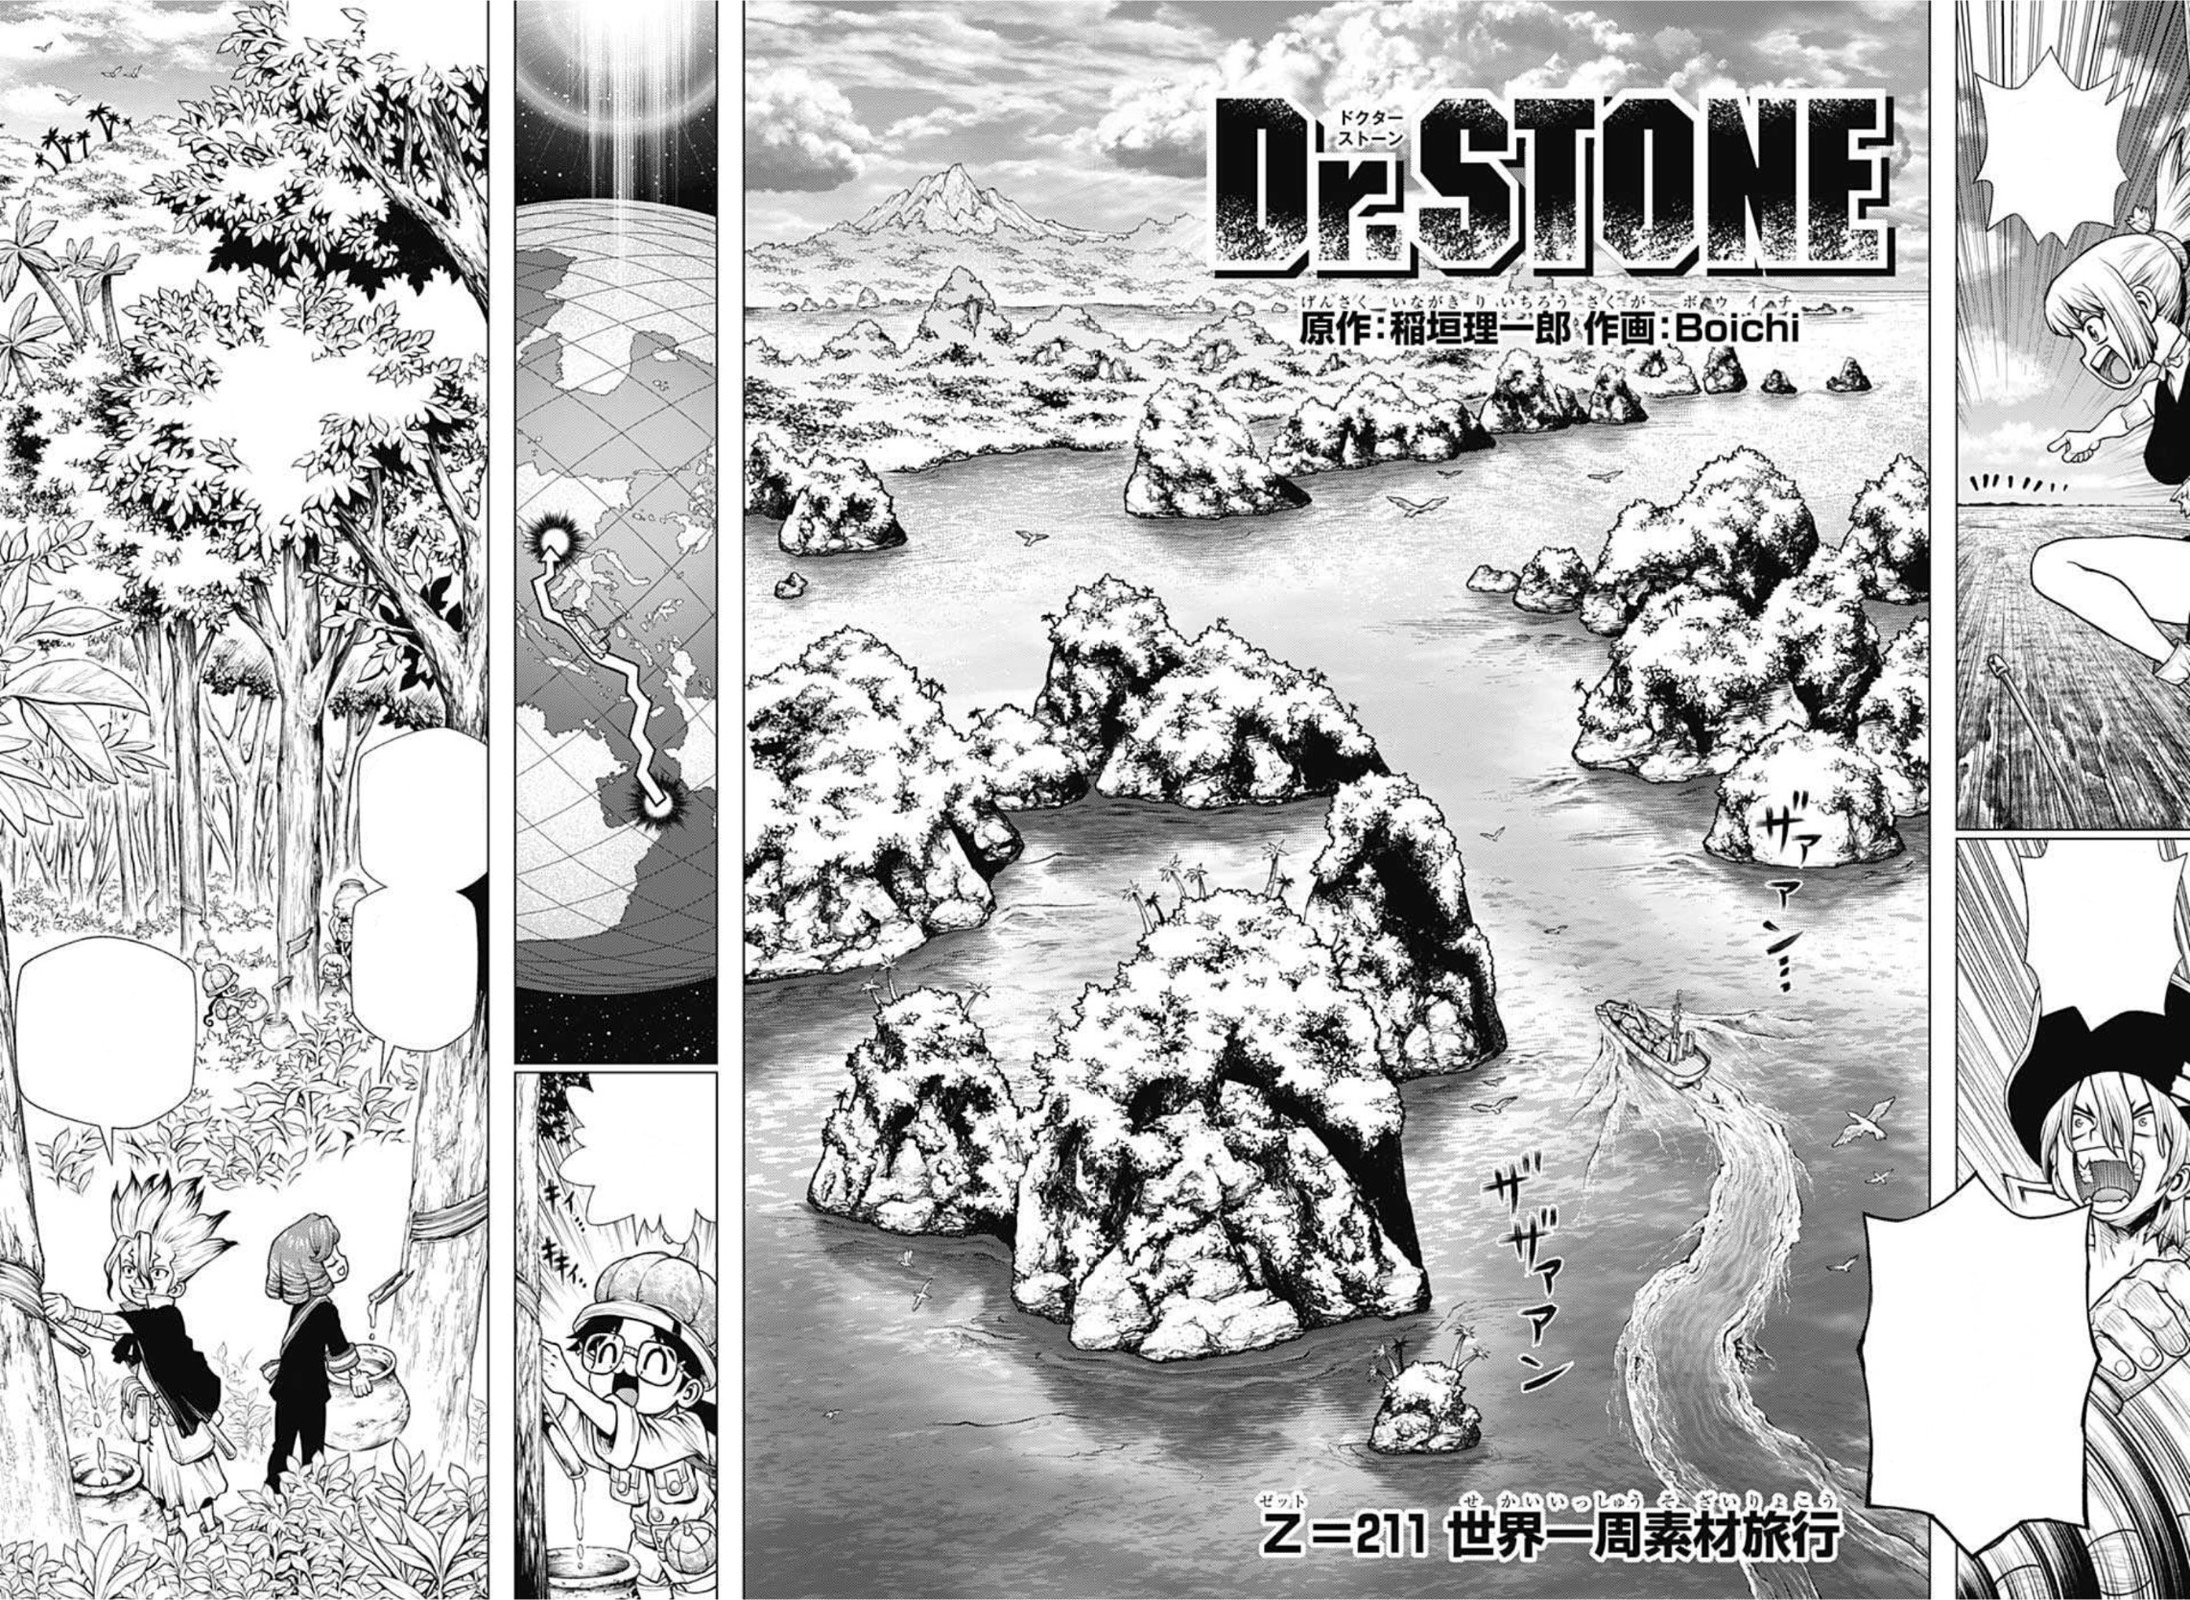 New Stone World Arc, Dr. Stone Wiki